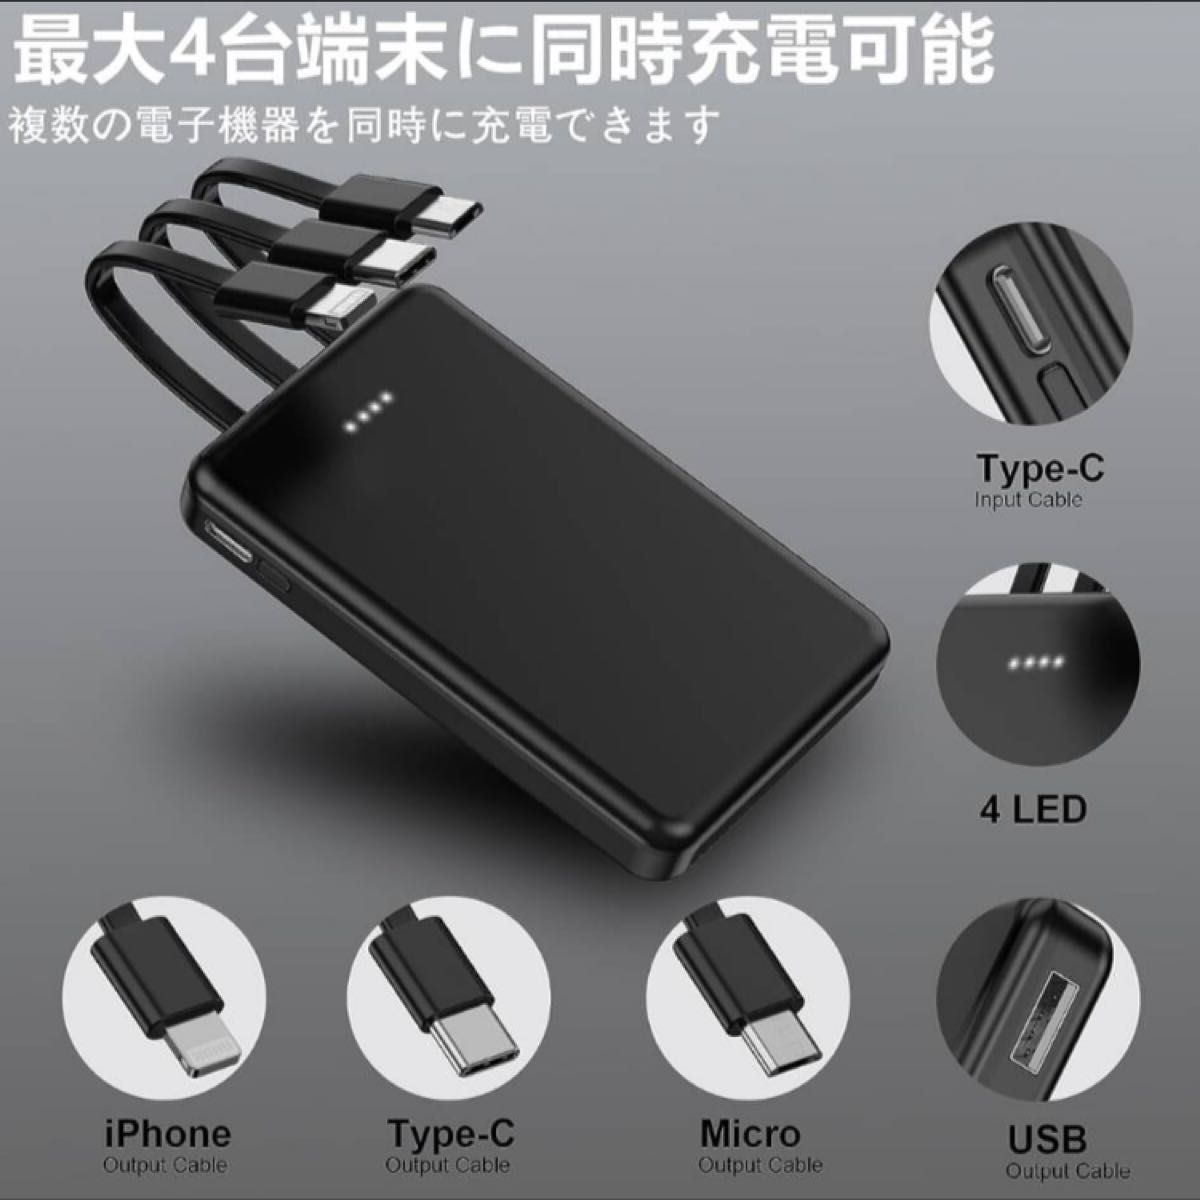 モバイルバッテリー 5000mAh3way出力大容量 USB/Type-C/USB-A入力 5V/2.1A携帯充電器(black)